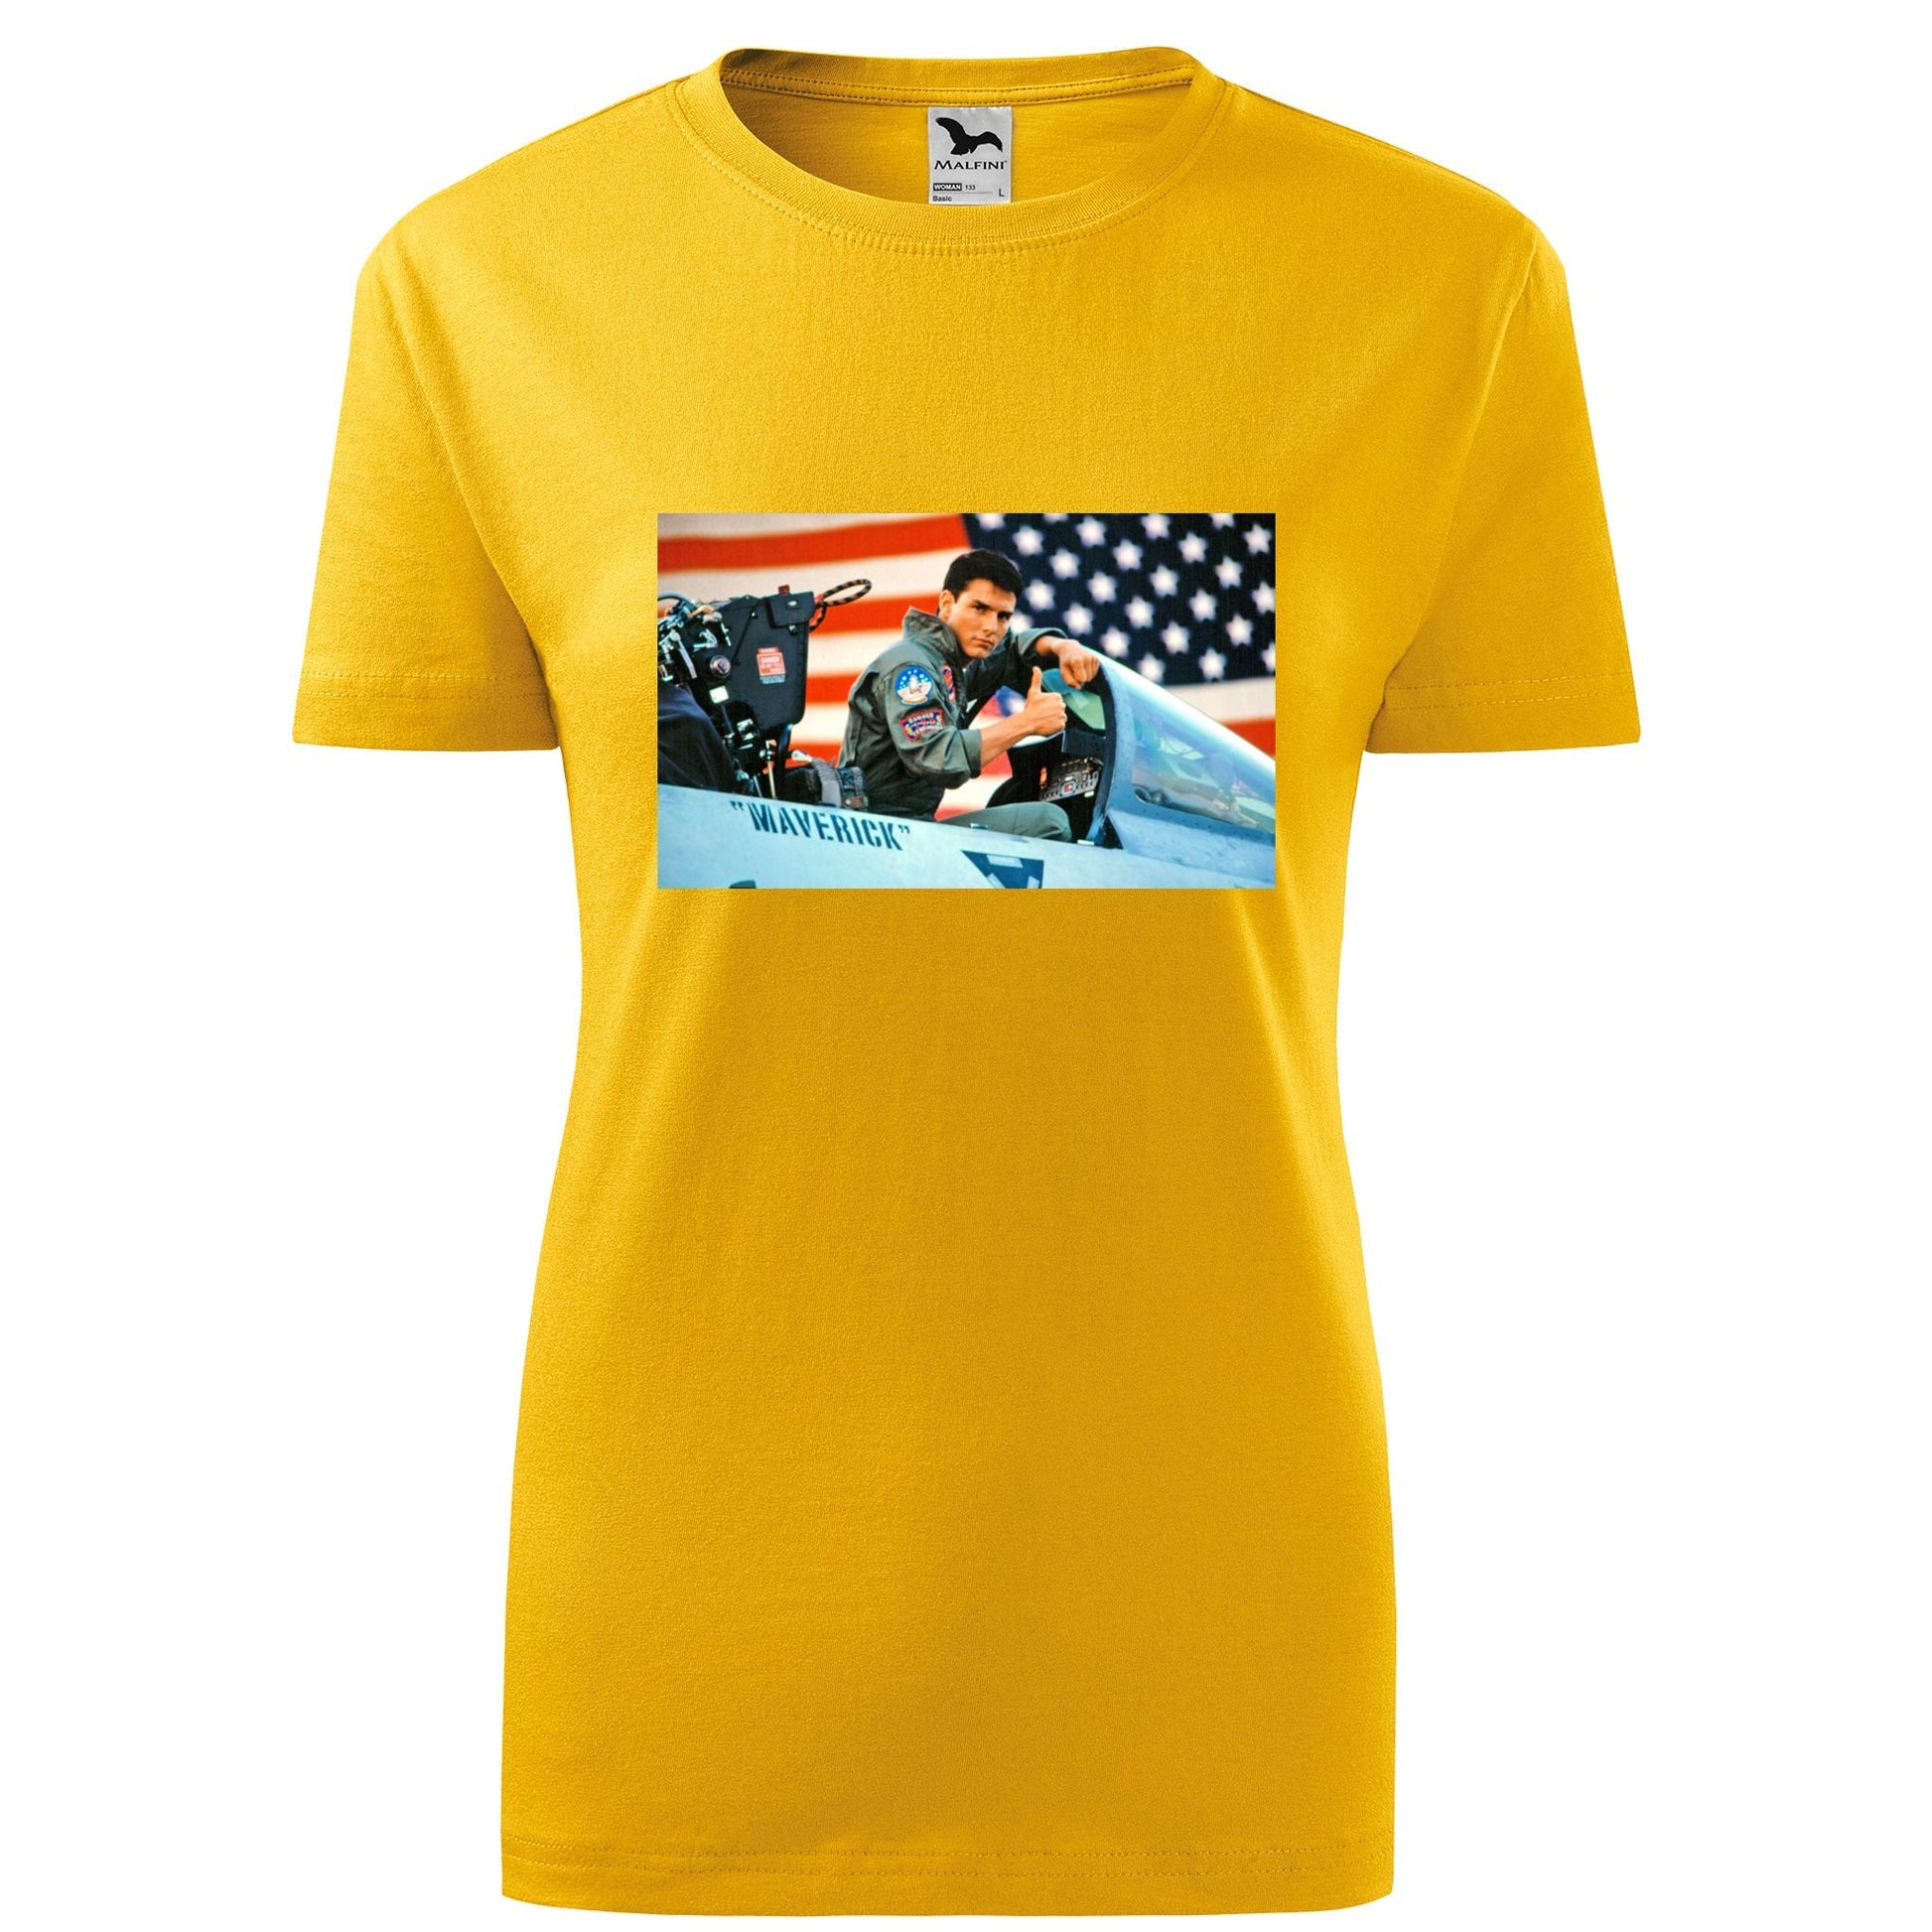 Top gun t-shirt - rvdesignprint